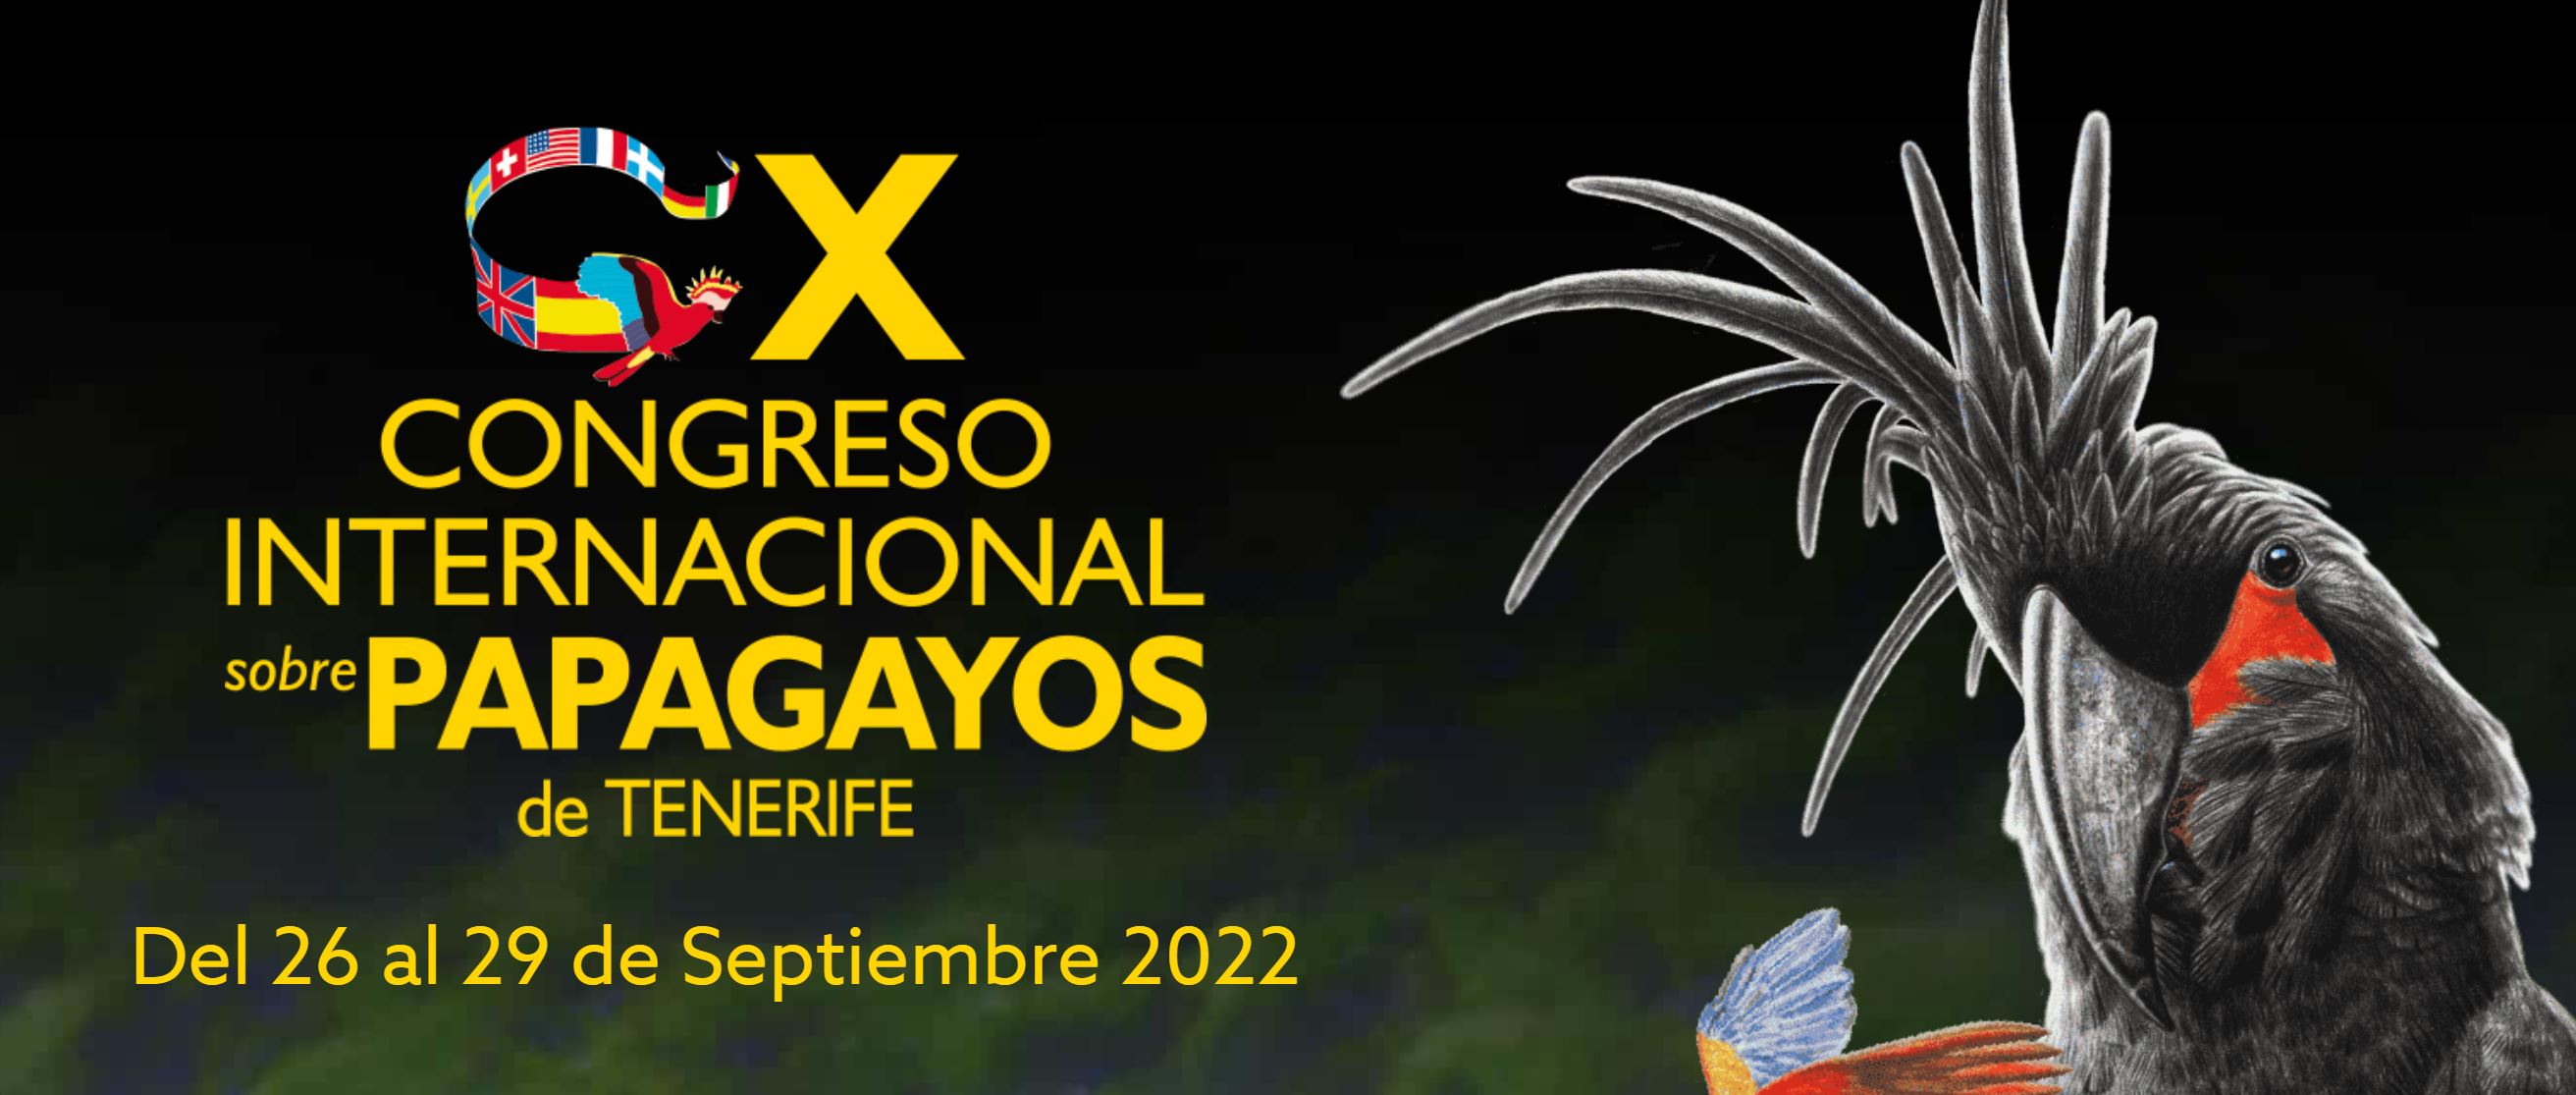 X Congreso Internacional de Papagayos de Tenerife